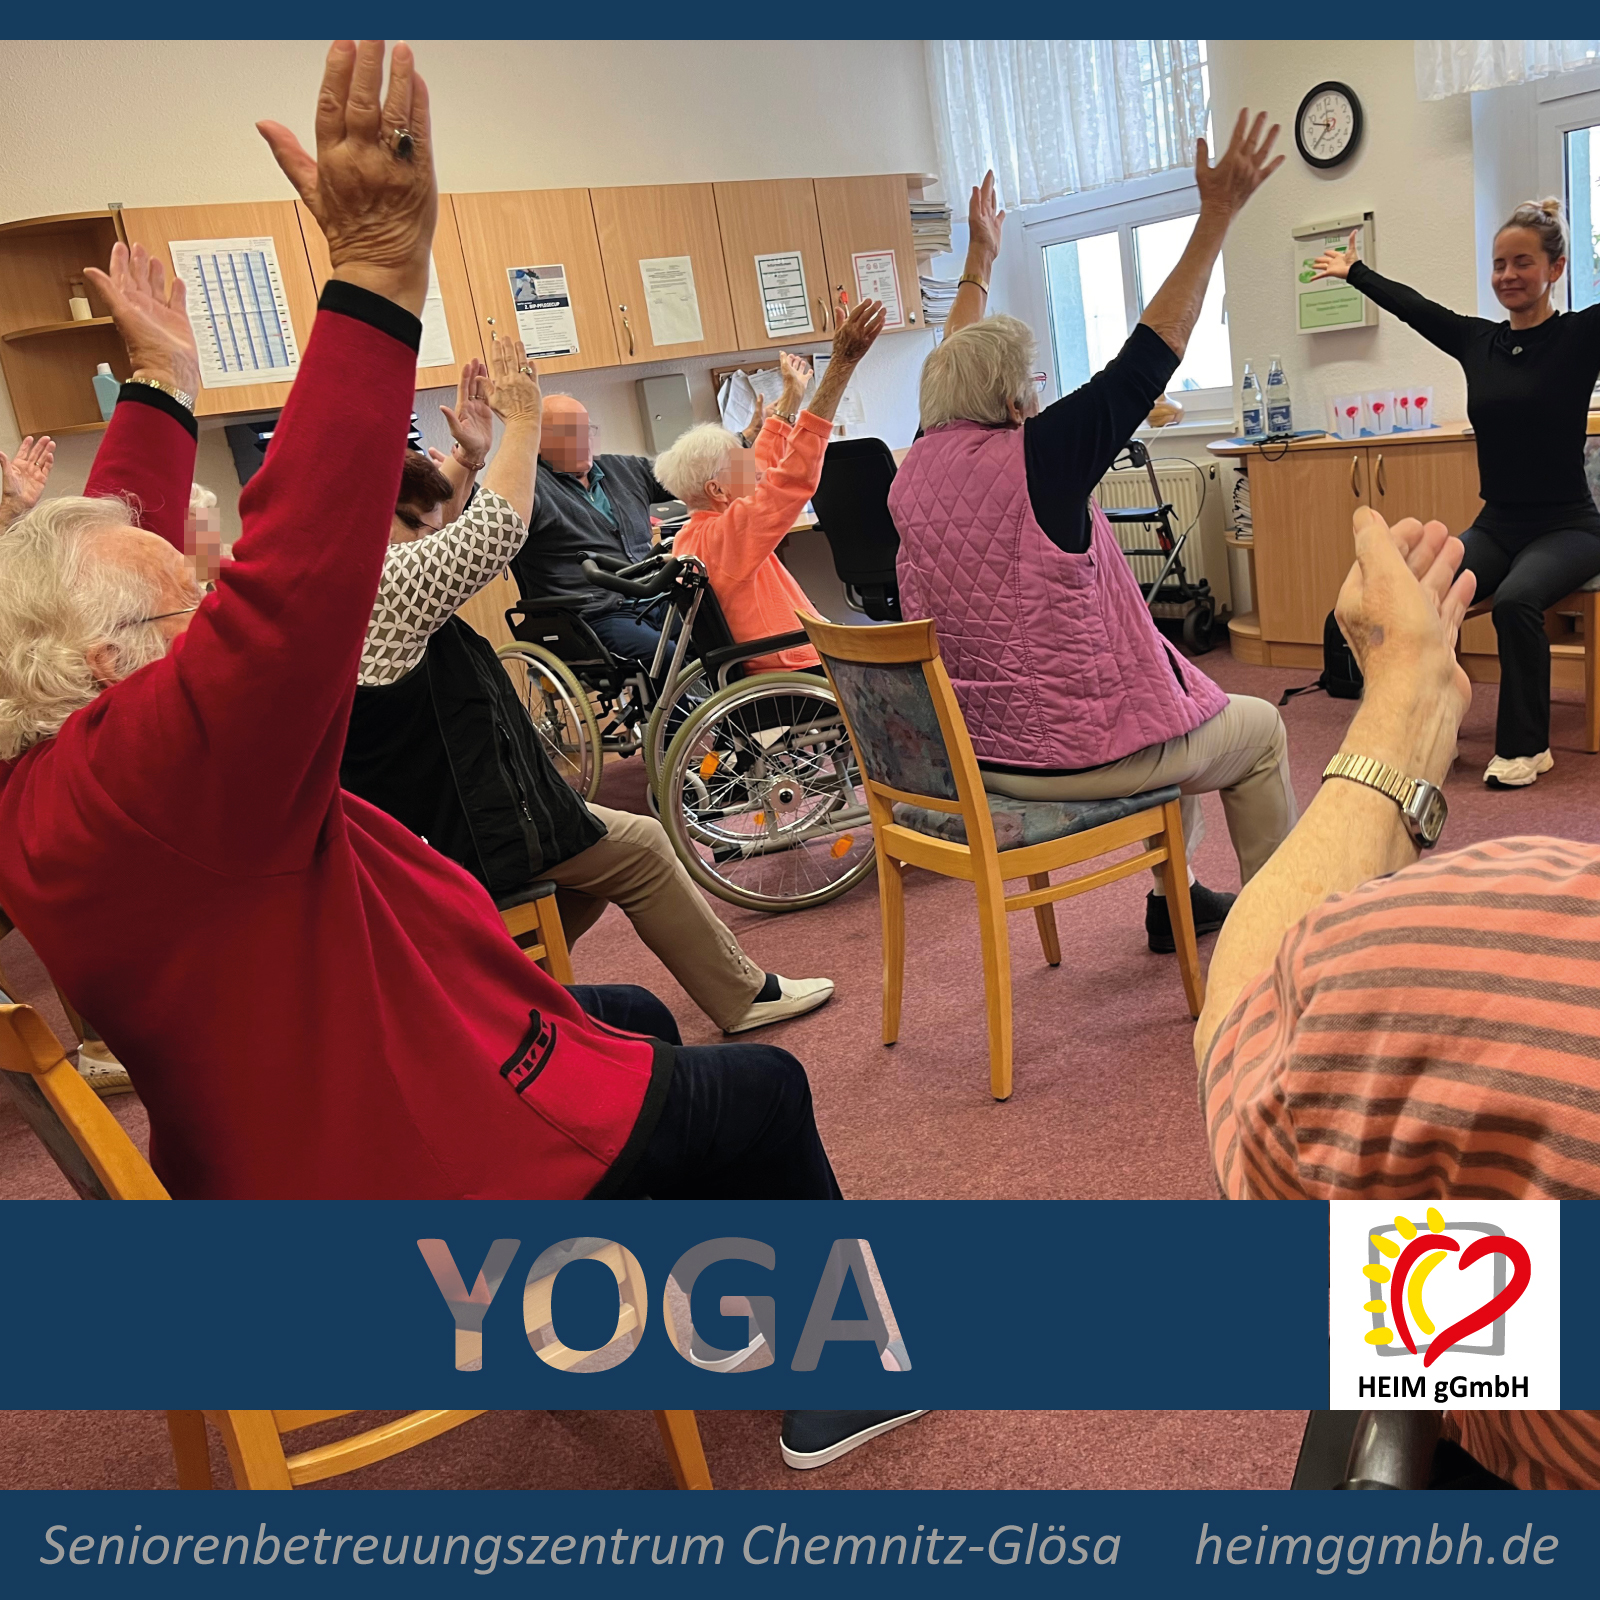 Die Yoga Kurse im Seniorenbetreuungszentrum Chemnitz-Glösa der HEIM gemeinnützigen GmbH: Übung für Körper und Geist